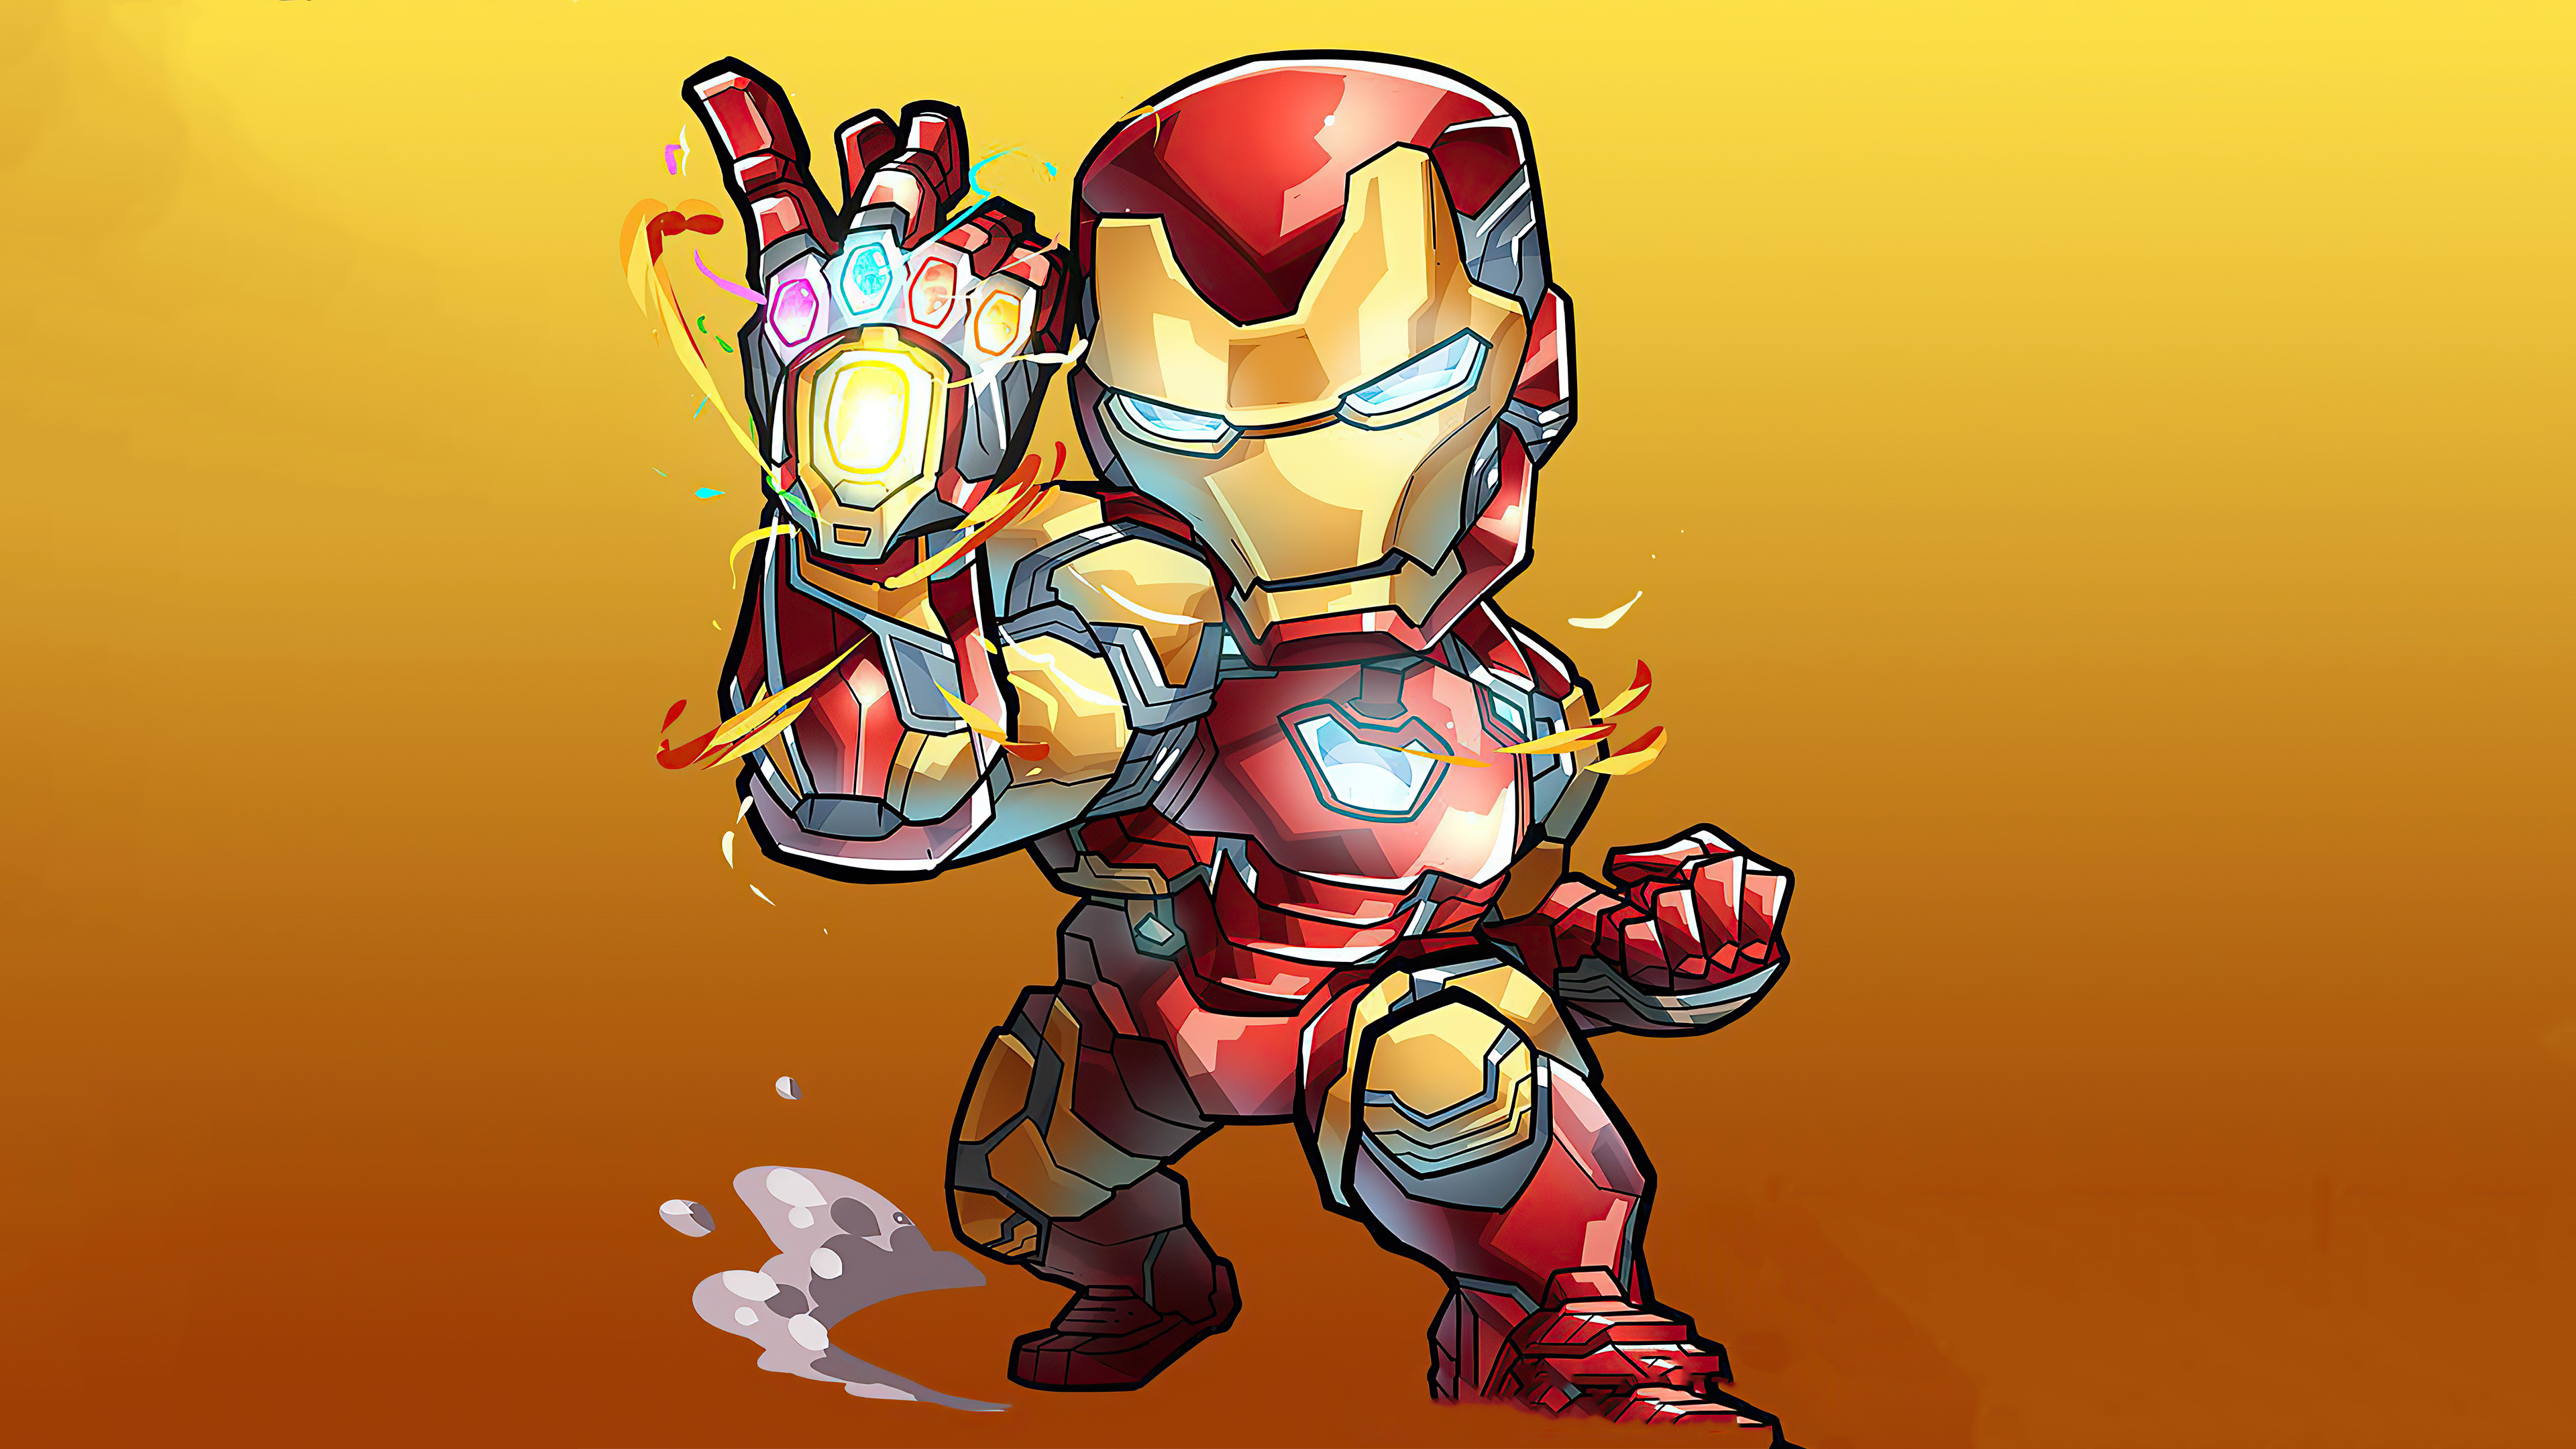 Top 99 Hình Ảnh Iron Man Tony Stark Làm Hình Nền Cho Fan Marvel  Top 10  Hà Nội